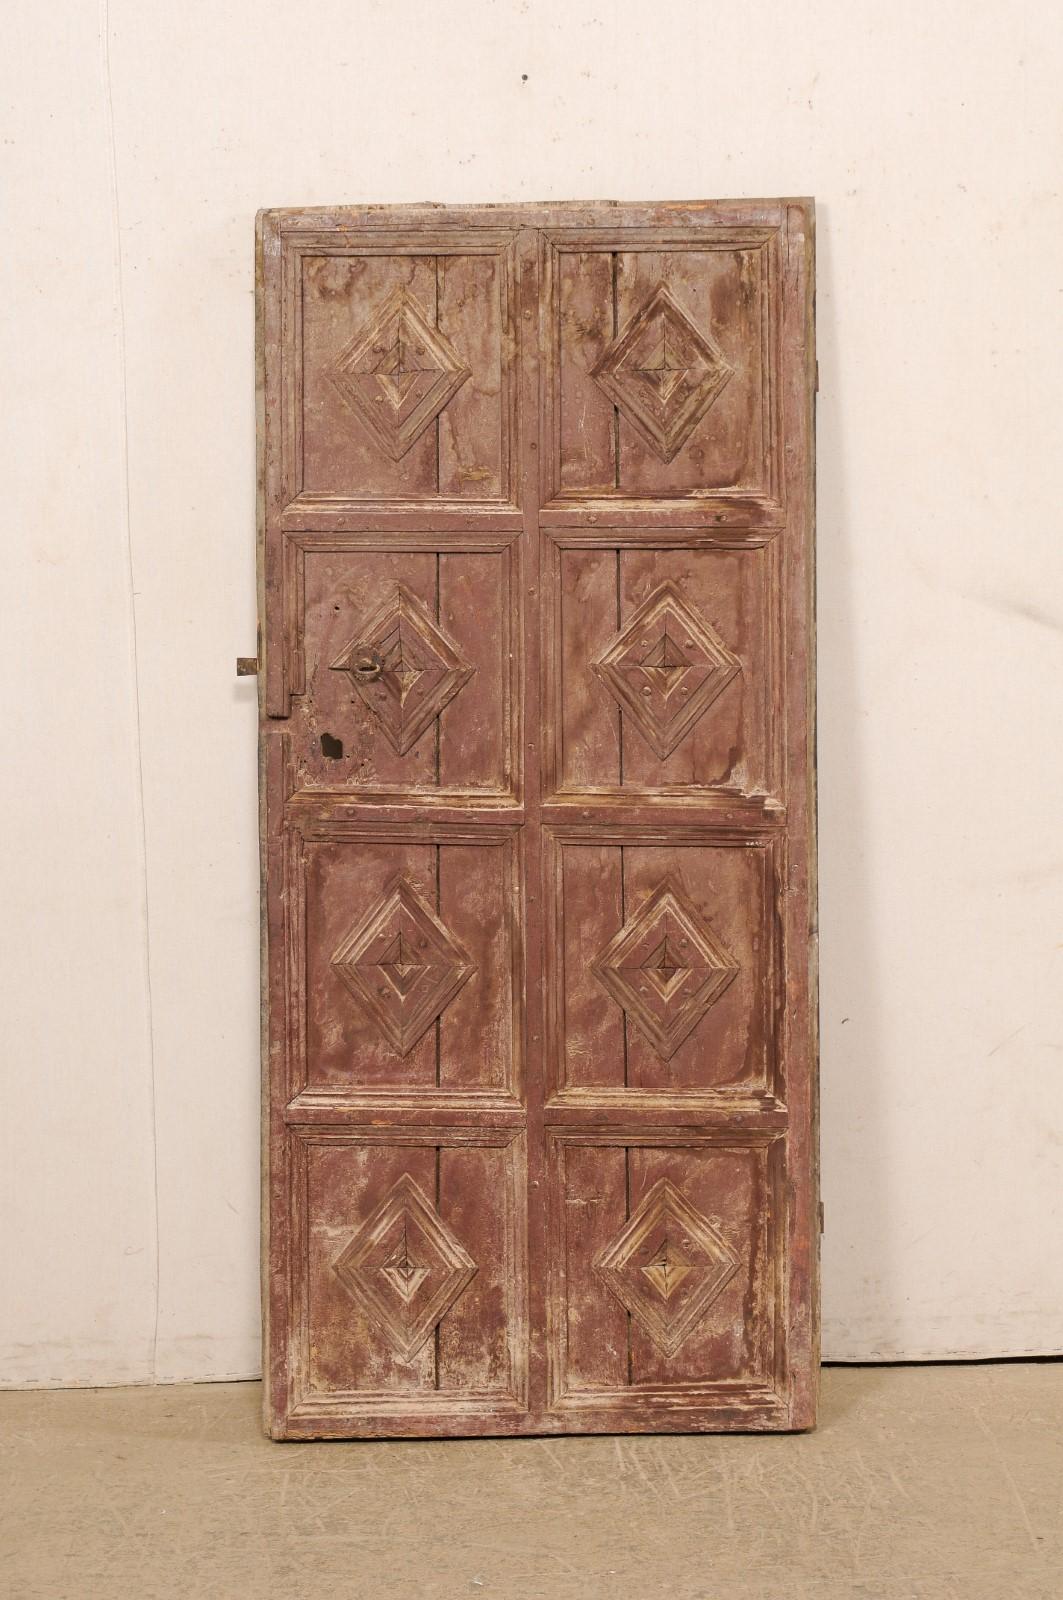 Porte espagnole en bois peint à huit panneaux, avec motif décoratif en forme de diamant, du XIXe siècle. Cette porte ancienne d'Espagne, d'une beauté rustique, a été conçue avec huit panneaux carrés en relief, chacun étant orné de motifs de diamants